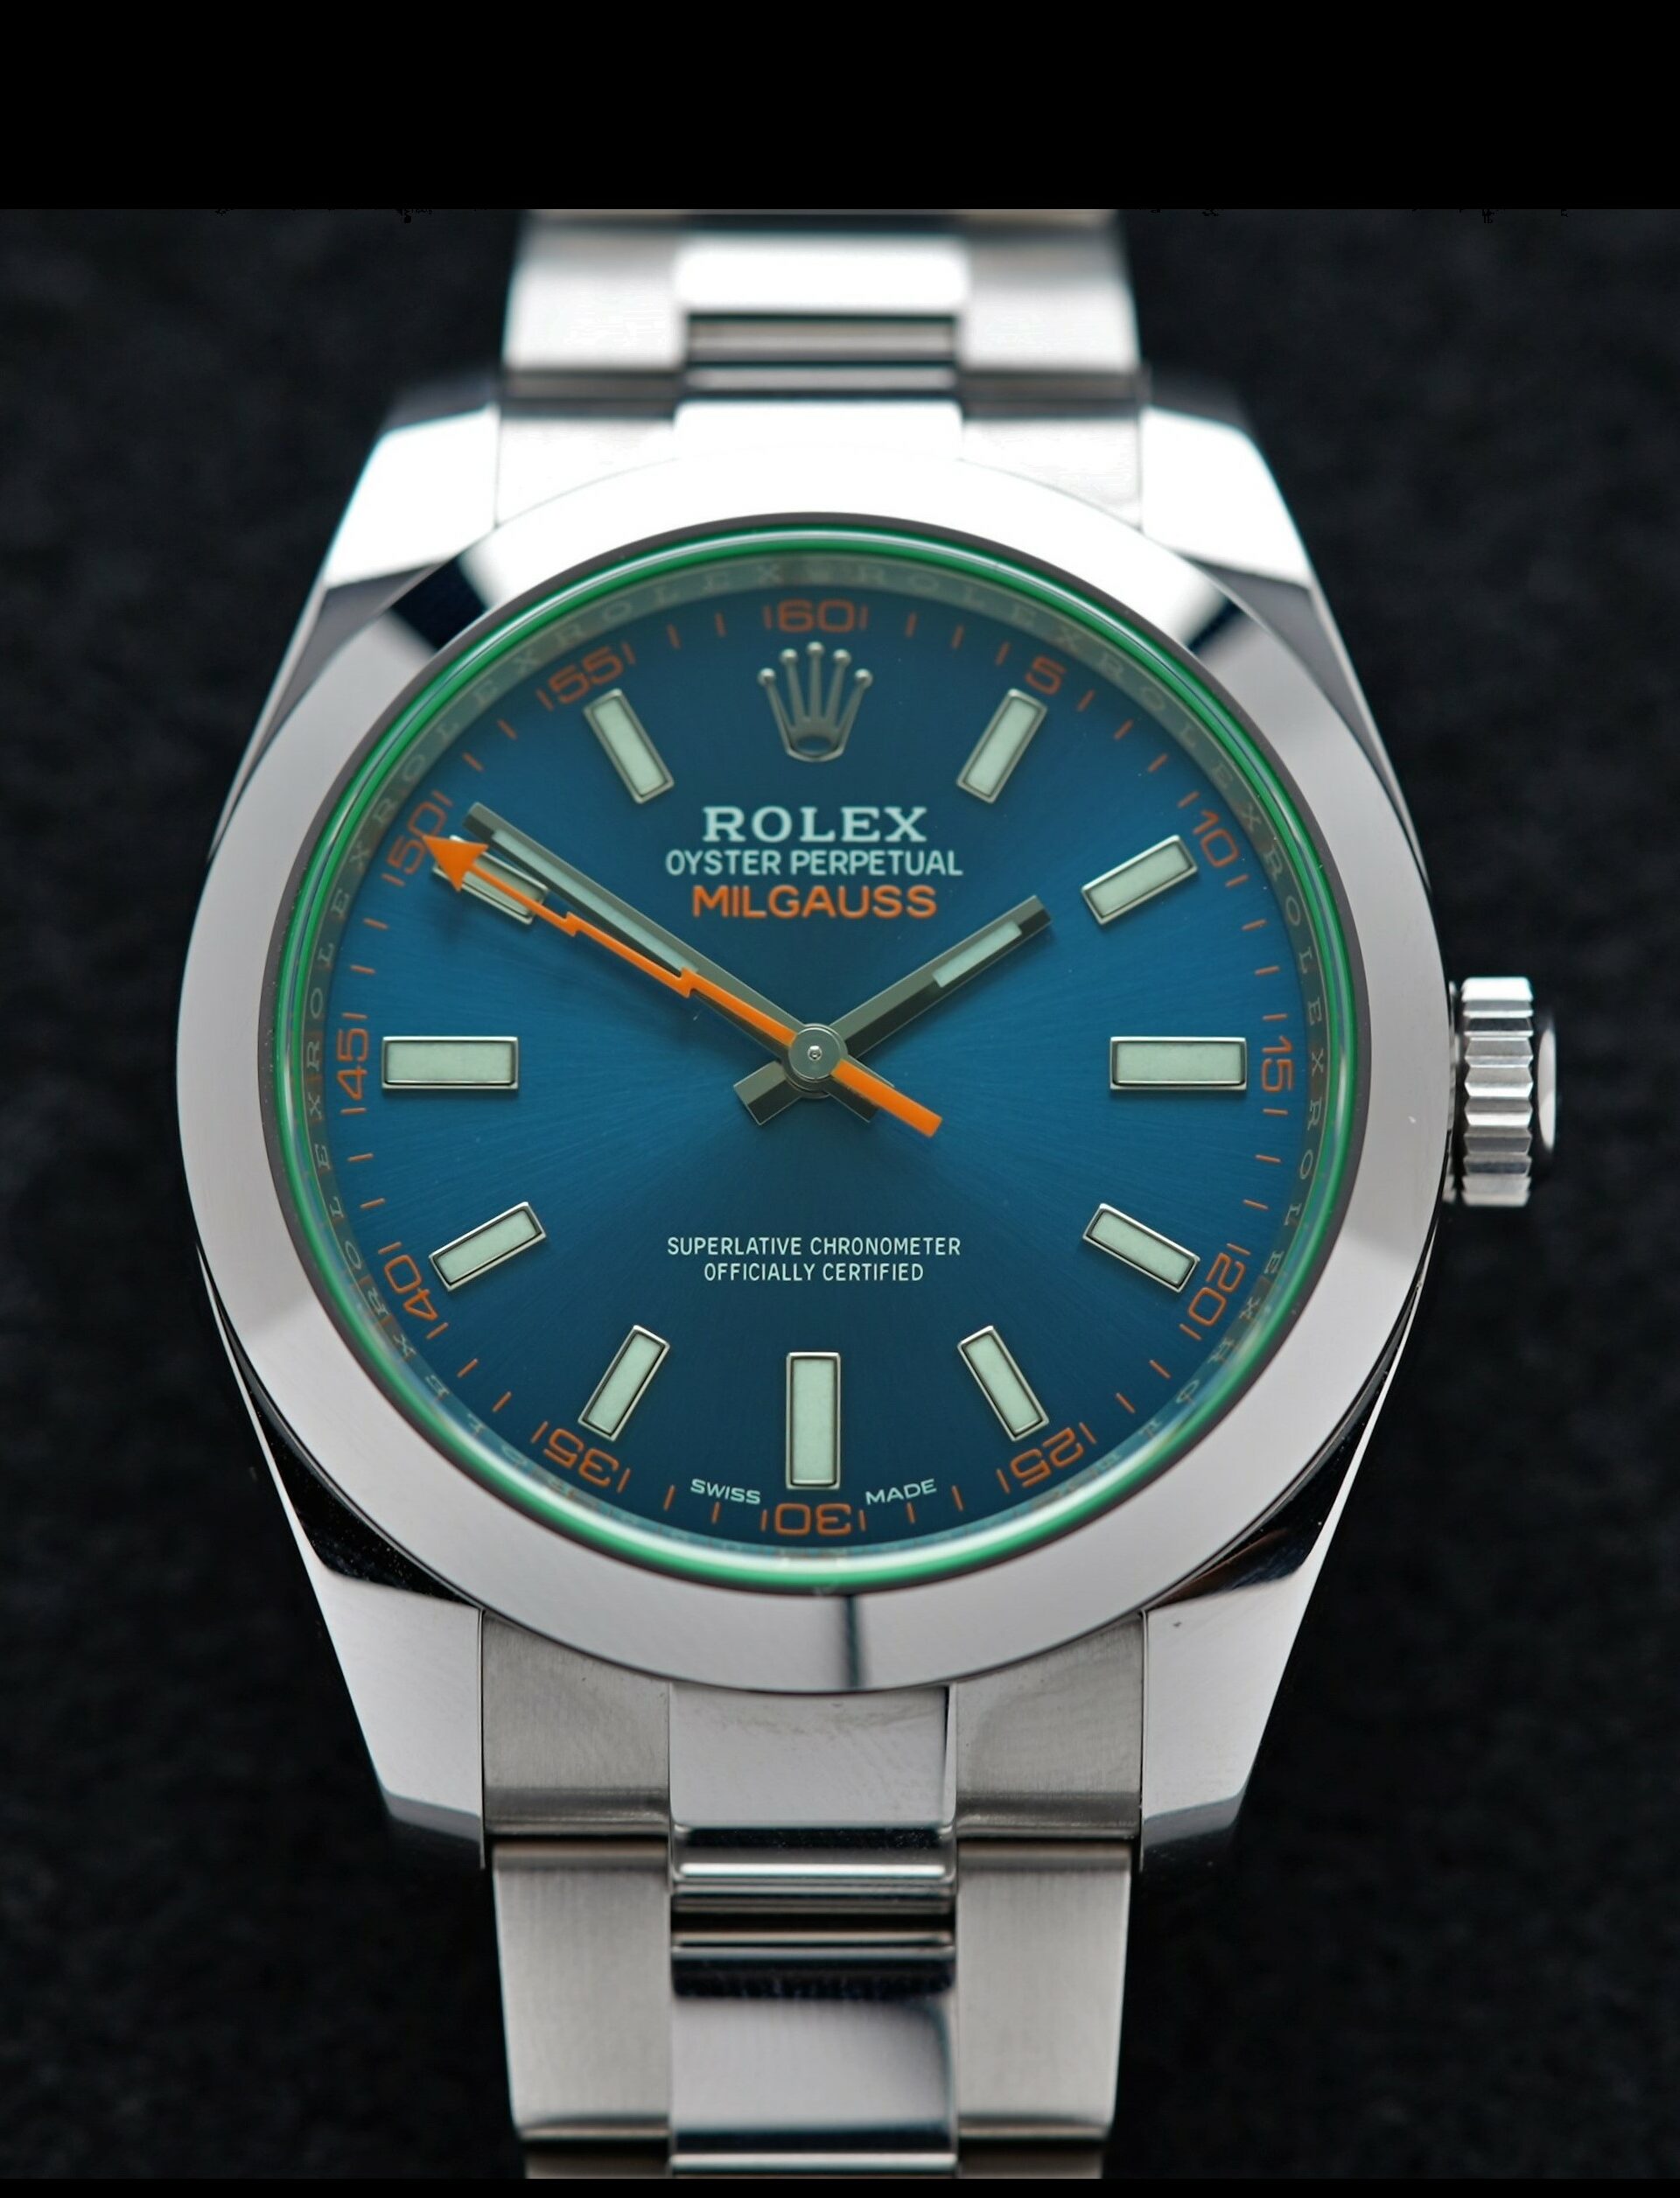 Rolex Milgauss Z Blue UNWORN 116400GV wristwatch displayed under white lighting.